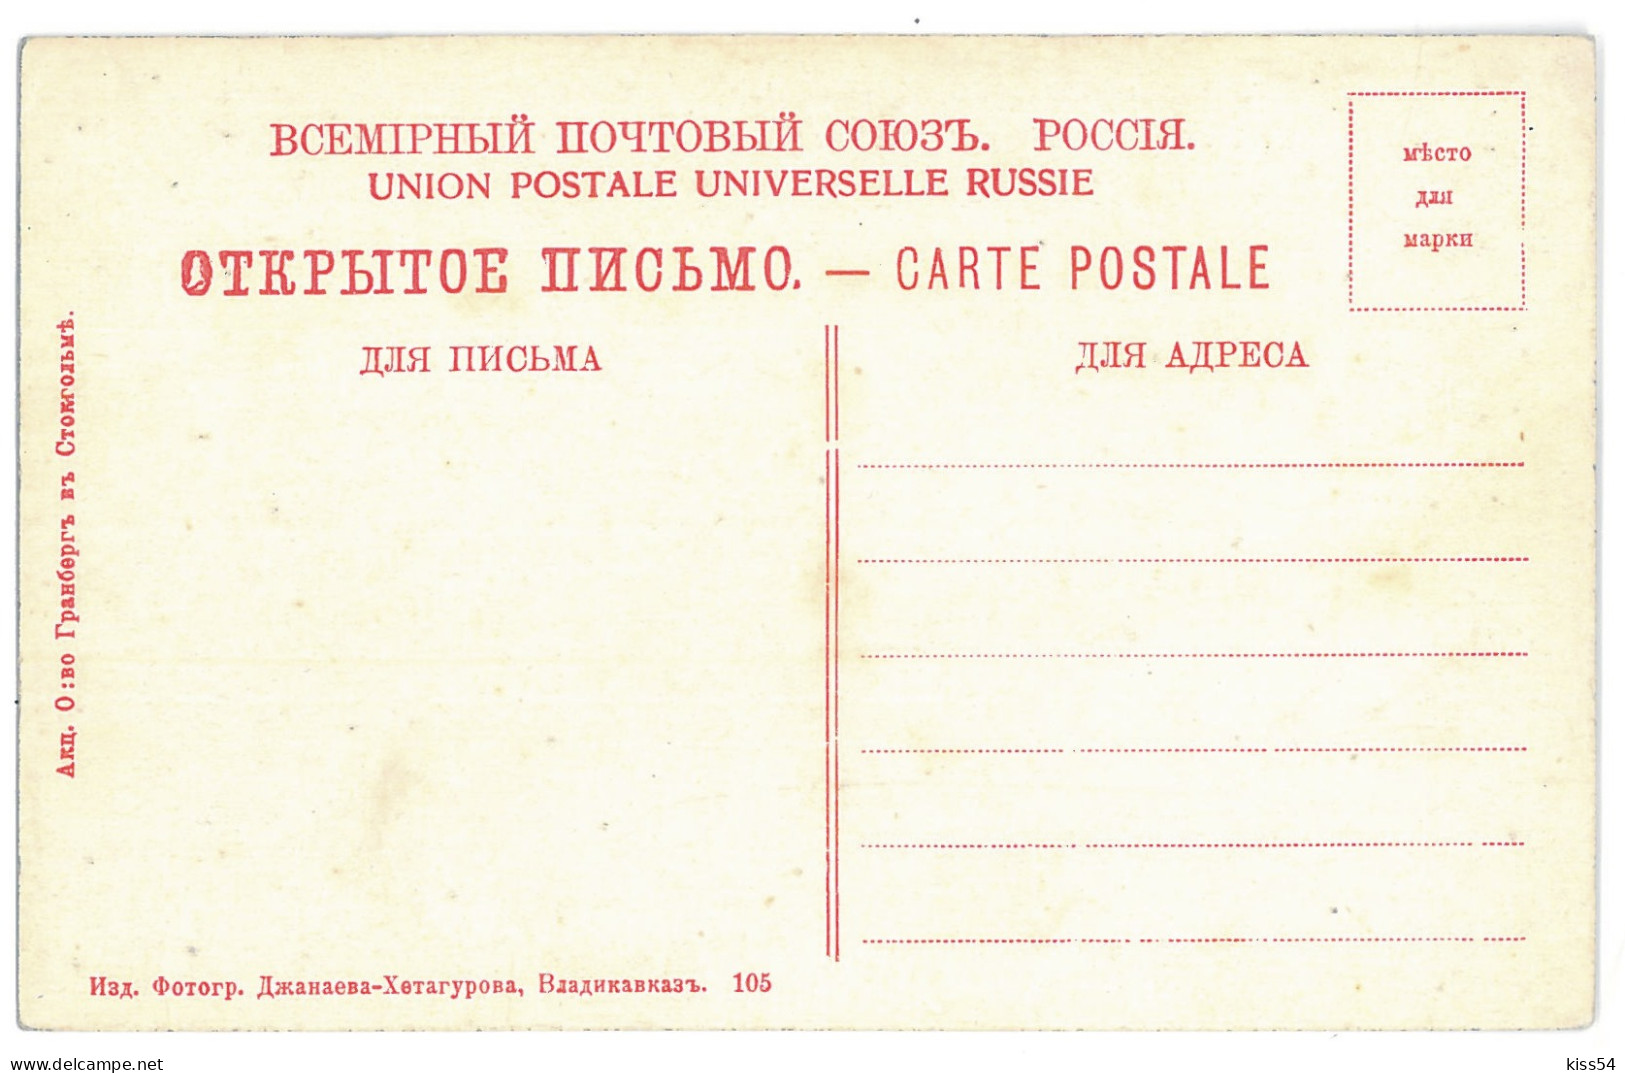 RUS 998 - 15271 DAGHESTAN, Bridge On KARA KOUISSOU, Russia - Old Postcard - Unused - Russland